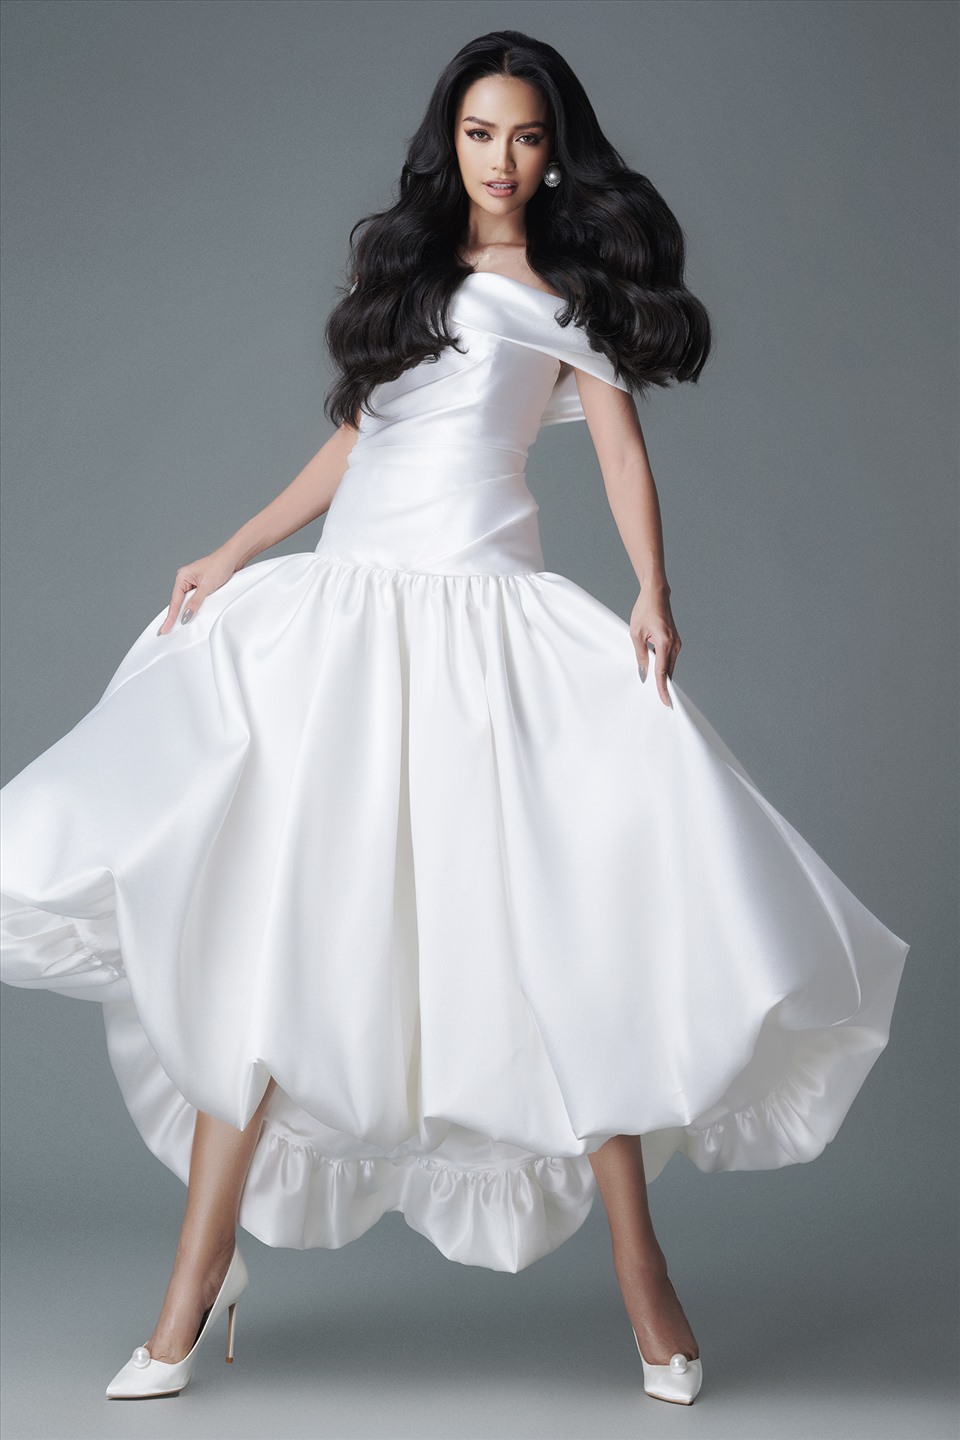 Nhà thiết kế Đỗ Mạnh Cường chú trọng vào việc tạo phom độc đáo cho trang phục. Chiếc váy trắng tạo điểm nhấn bởi những đường gấp nếp bất đối xứng. Phần thân váy được hạ dài xuống hơn thắt eo tạo điểm nhấn tôn vóc dáng của nàng hậu. Ảnh: Milor Trần